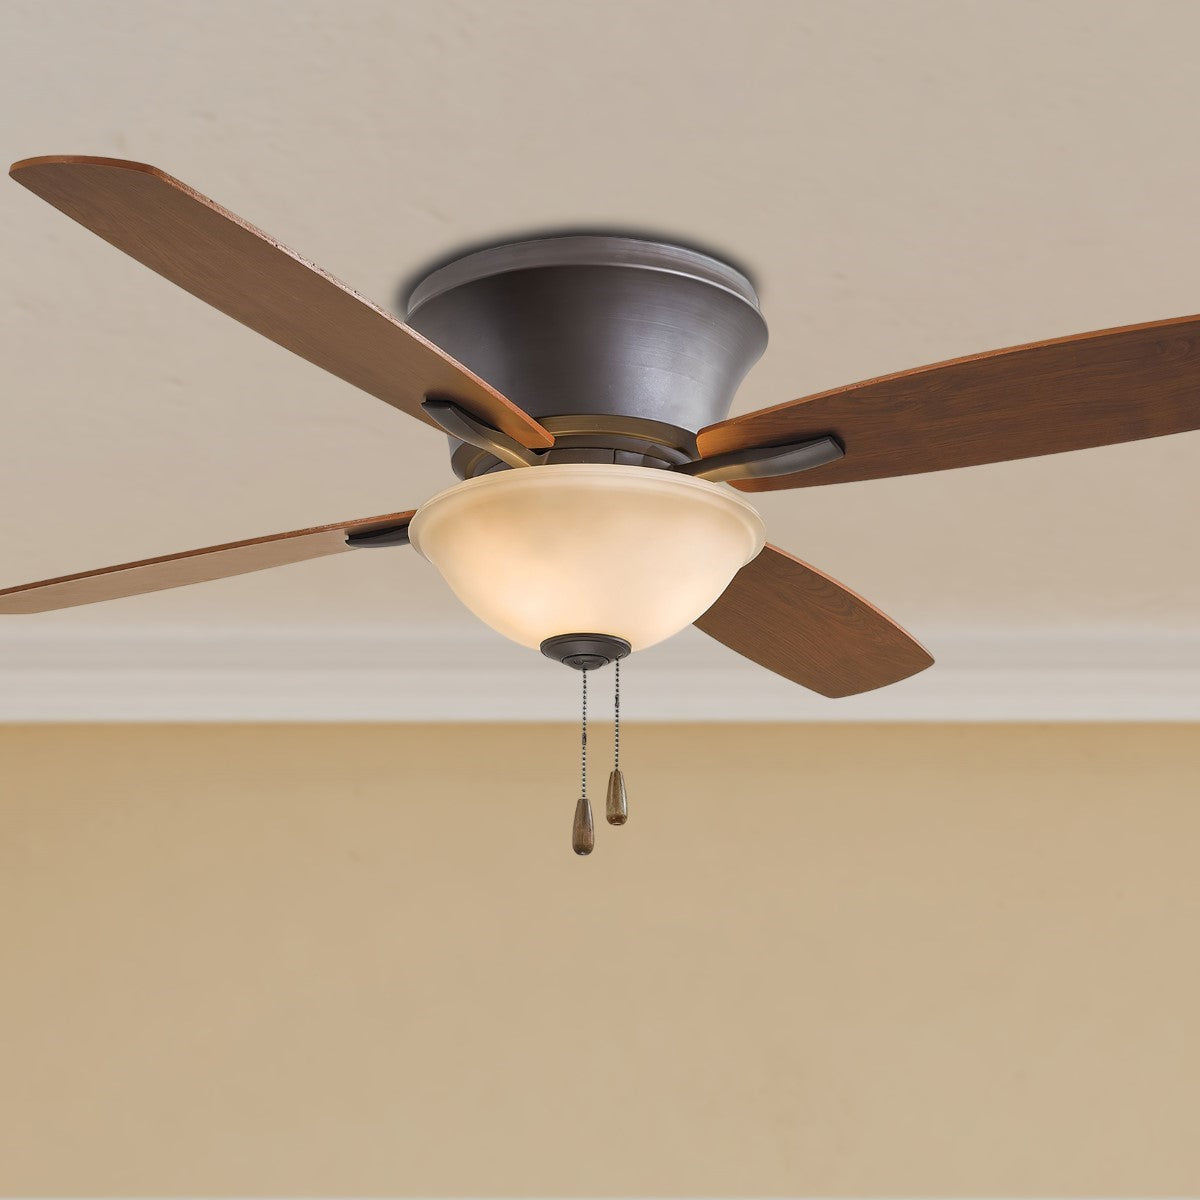 Mojo II 52 Inch Flush Mount Ceiling Fan With Light